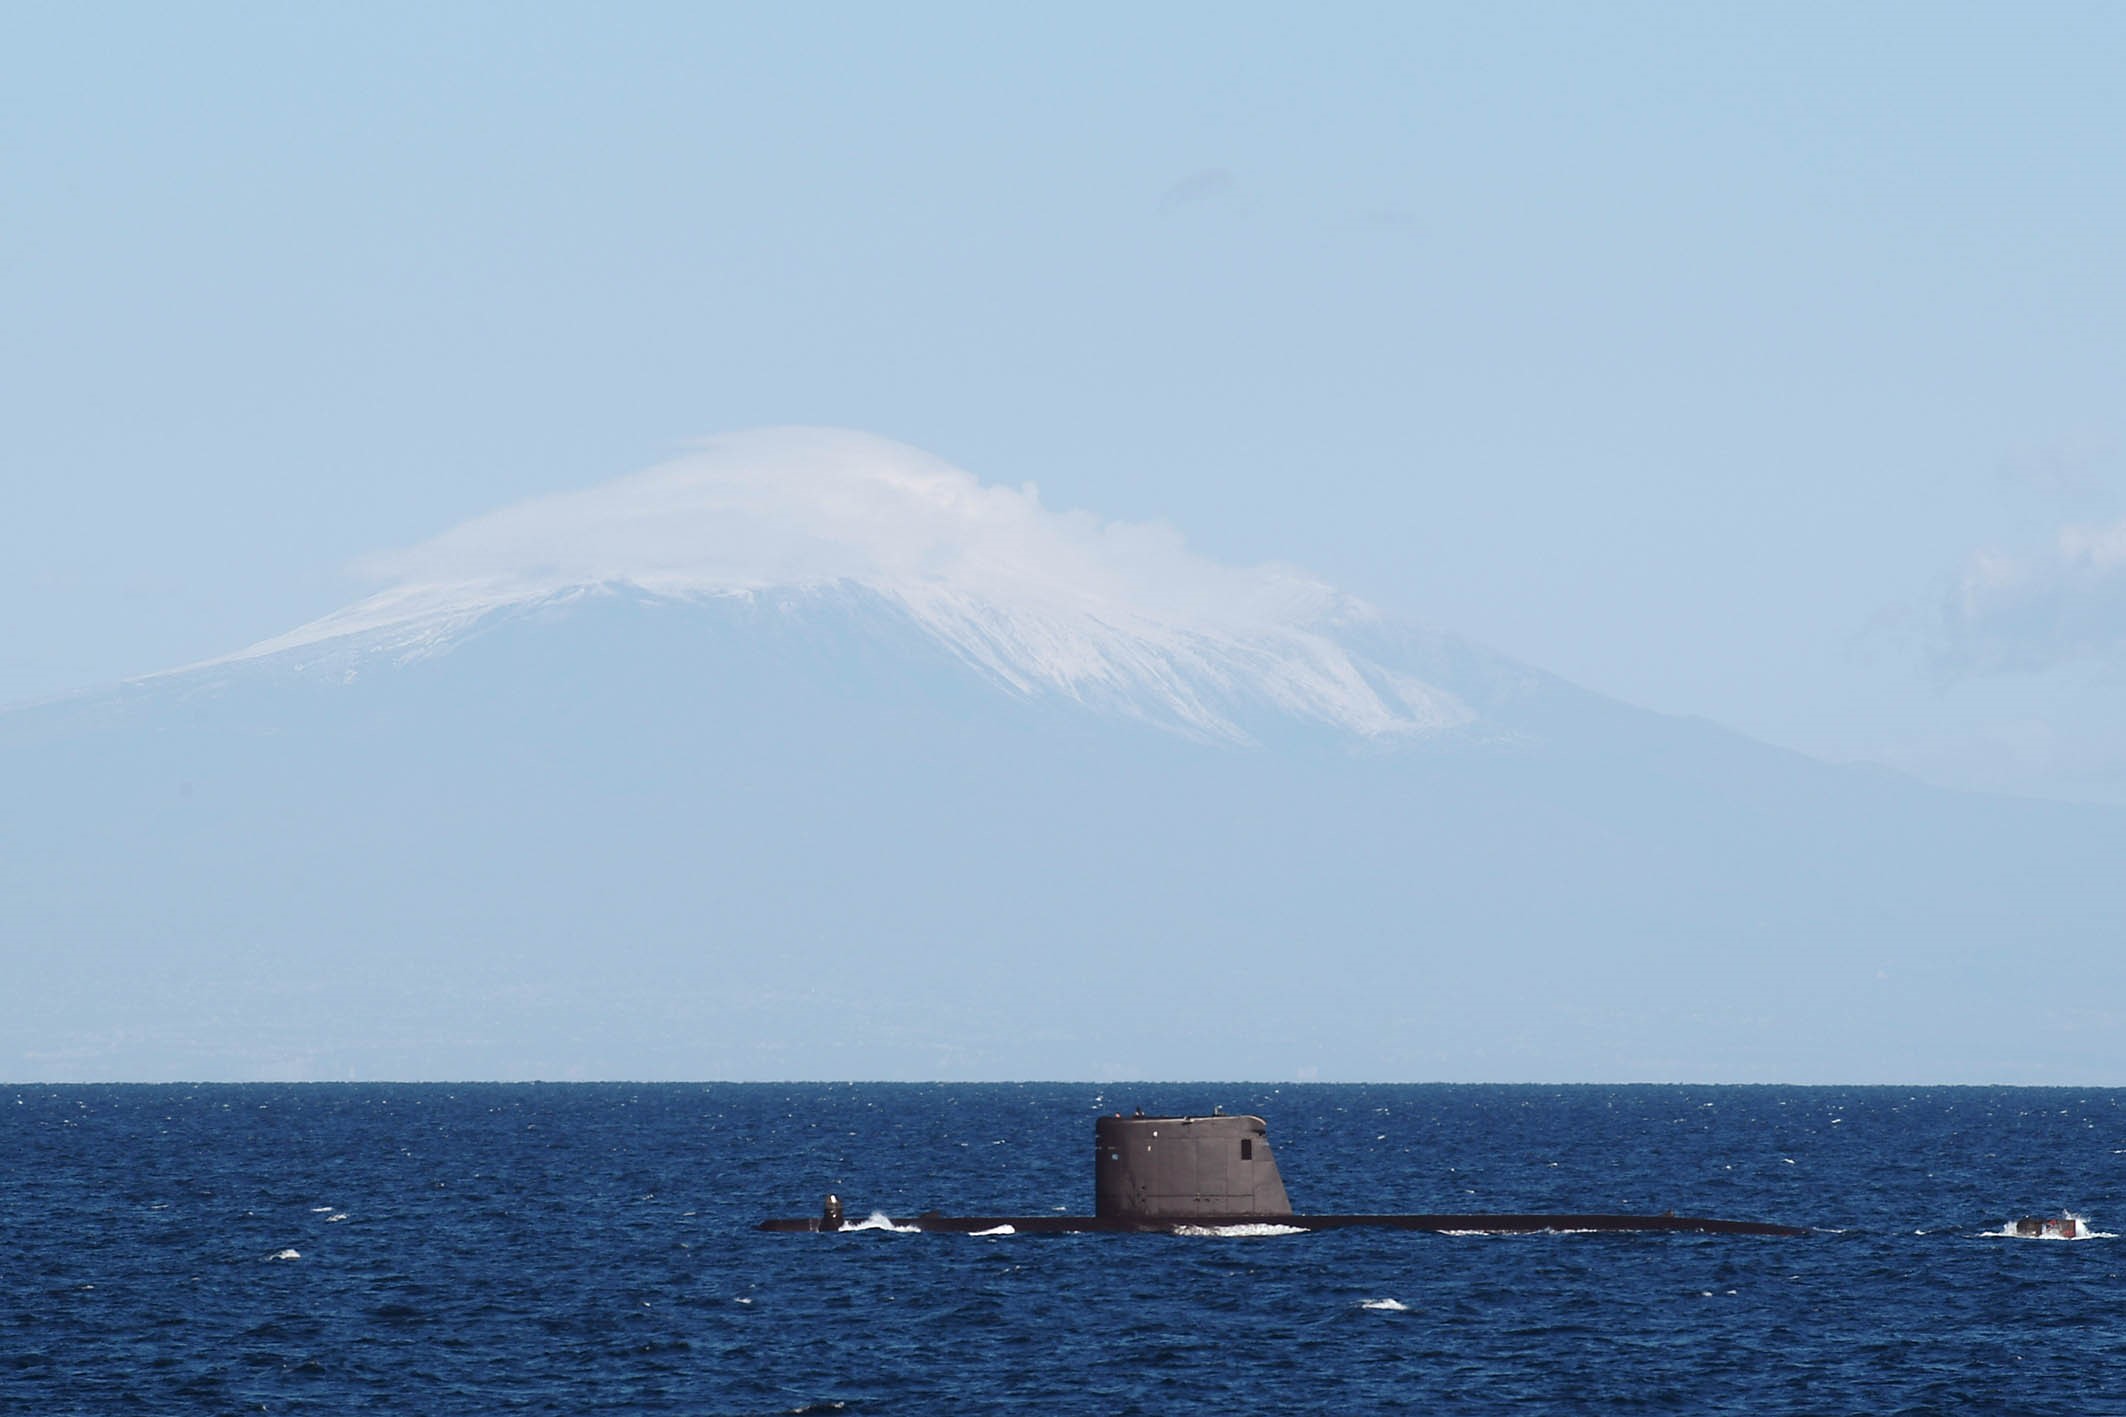 El submarino navega en aguas del Mediterráneo